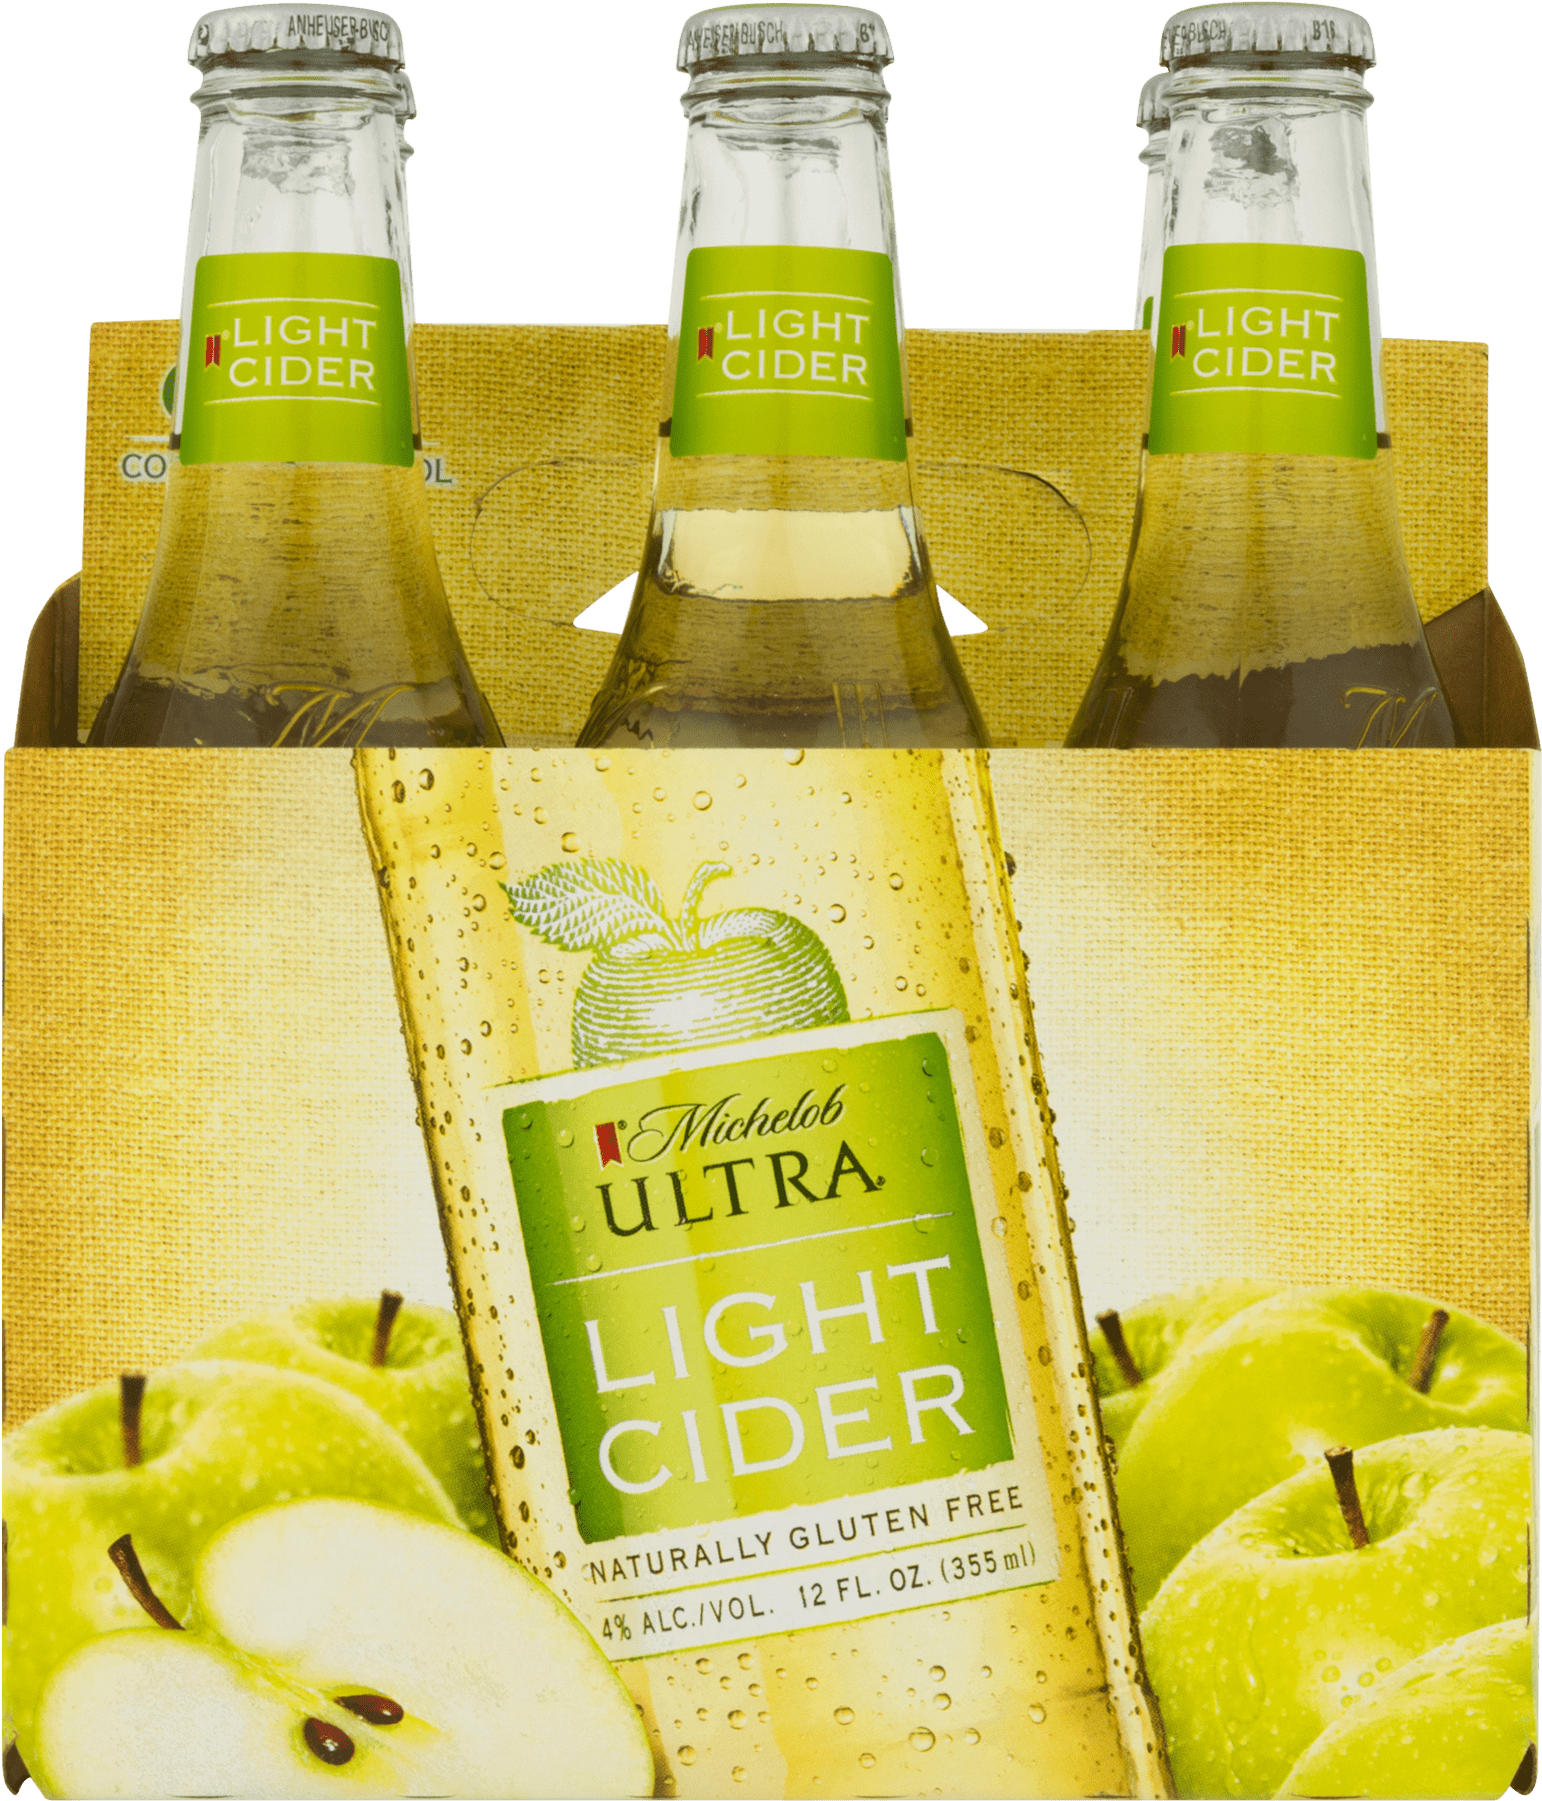 Michelob Ultra Light Cider Bottles PNG